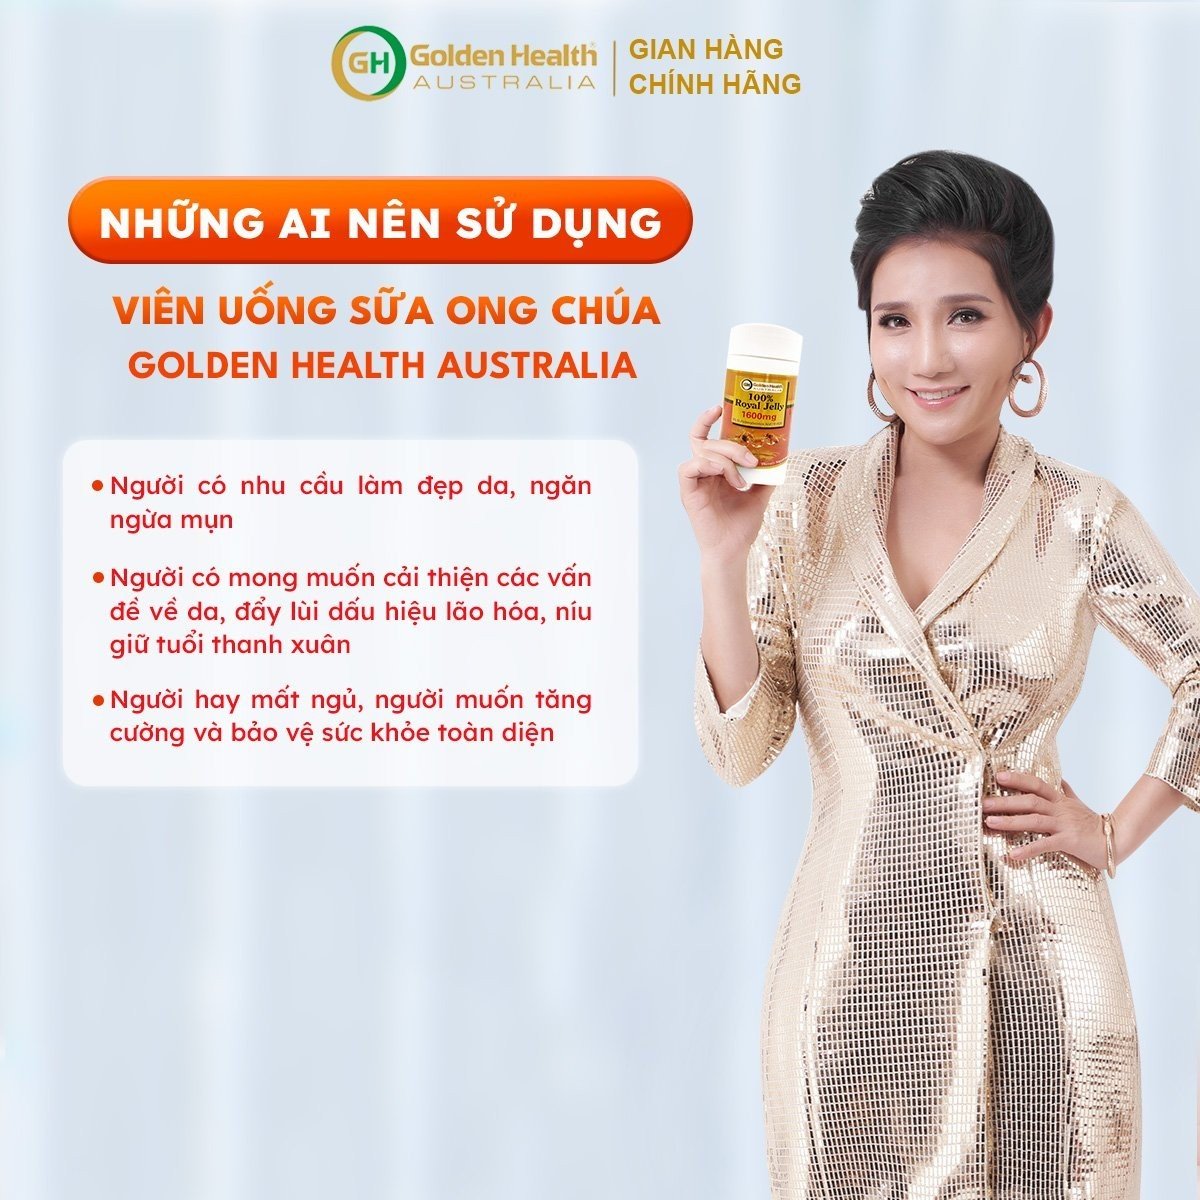 Viên Uống Sữa Ong Chúa Golden Health Royal Jelly 1600mg Hộp 100 Viên, Giúp Da Chống Lão Hóa, Nám, Sạm, Chống Mất Ngủ, Bảo Vệ Sức Khỏe Toàn Diện - Nhập Khẩu Chính Ngạch Từ Úc